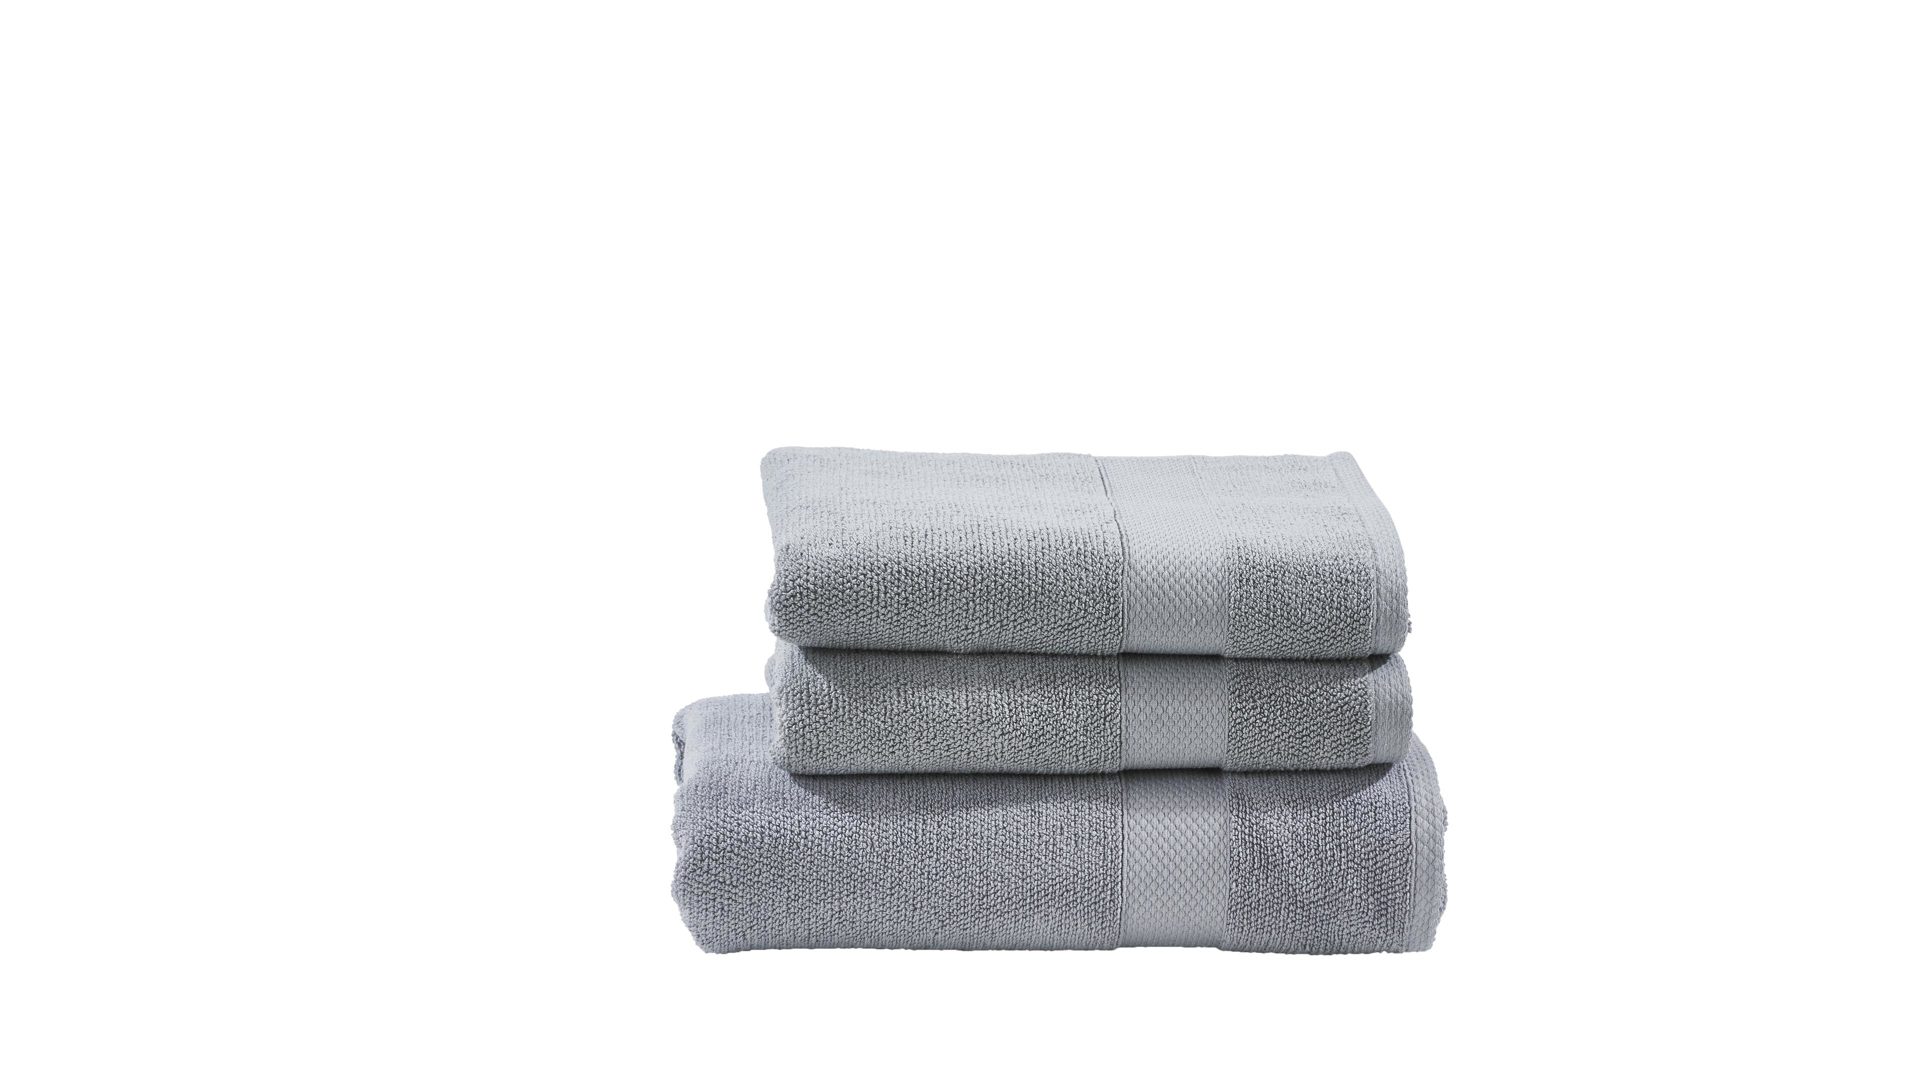 Handtuch-Set Done® by karabel home company aus Stoff in Hellgrau DONE® Handtuch-Set Deluxe silberfarbene Baumwolle  – dreiteilig